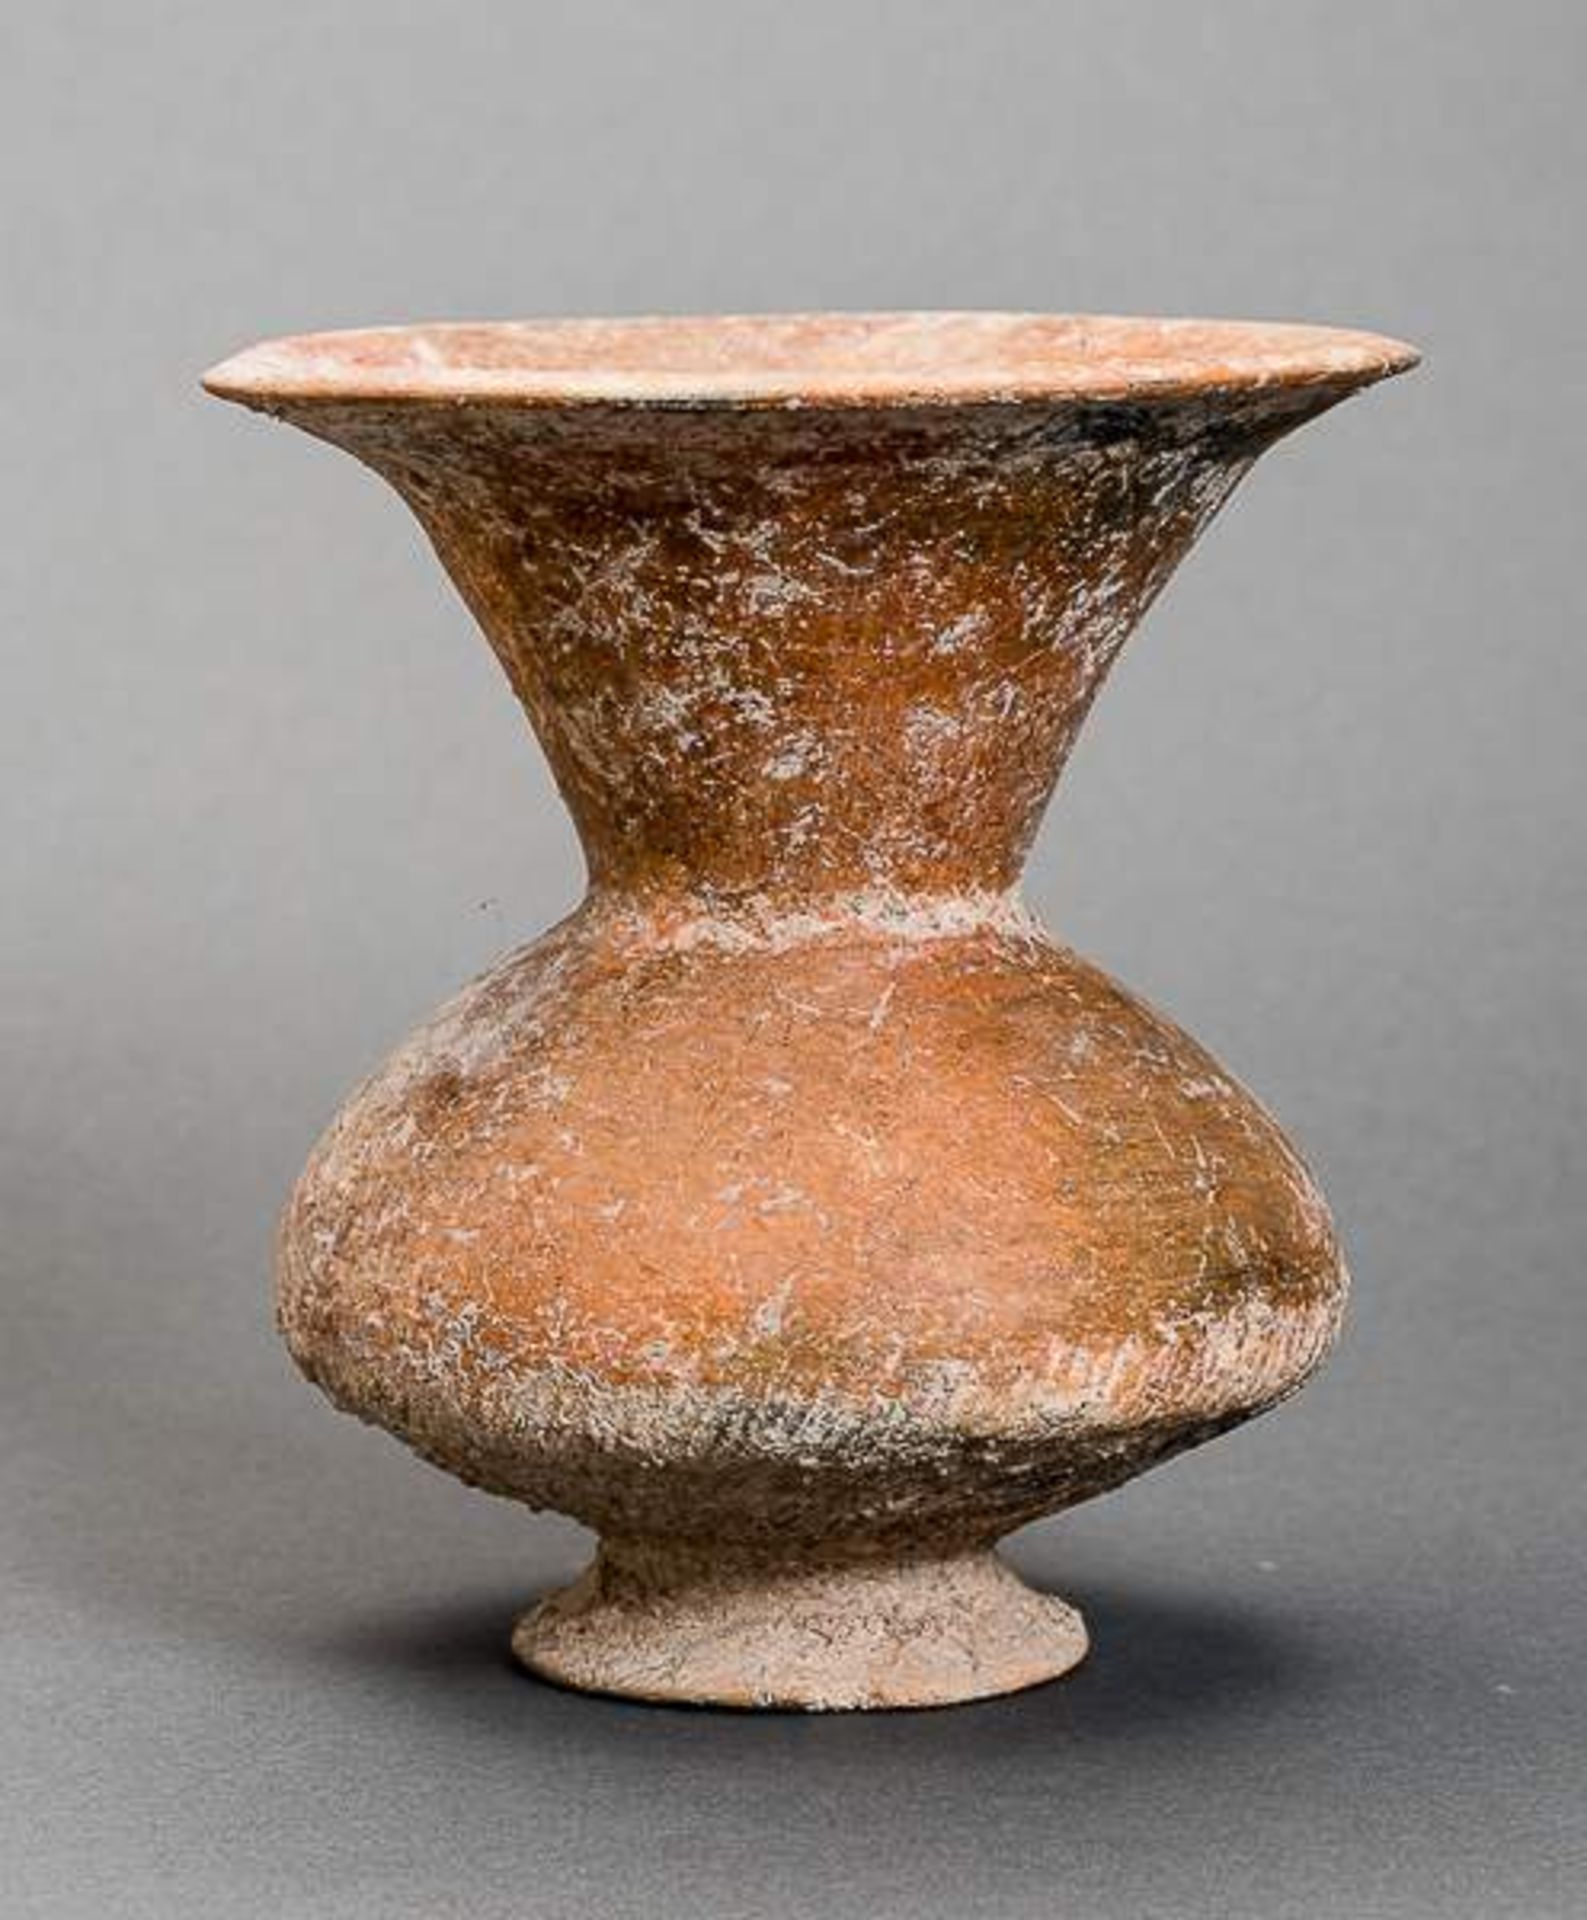 KELCHFÖRMIGES ARCHAISCHES GEFÄSS Bemalte Keramik. Ban Chiang, späte neolithische Zeit Schöne, - Image 2 of 7